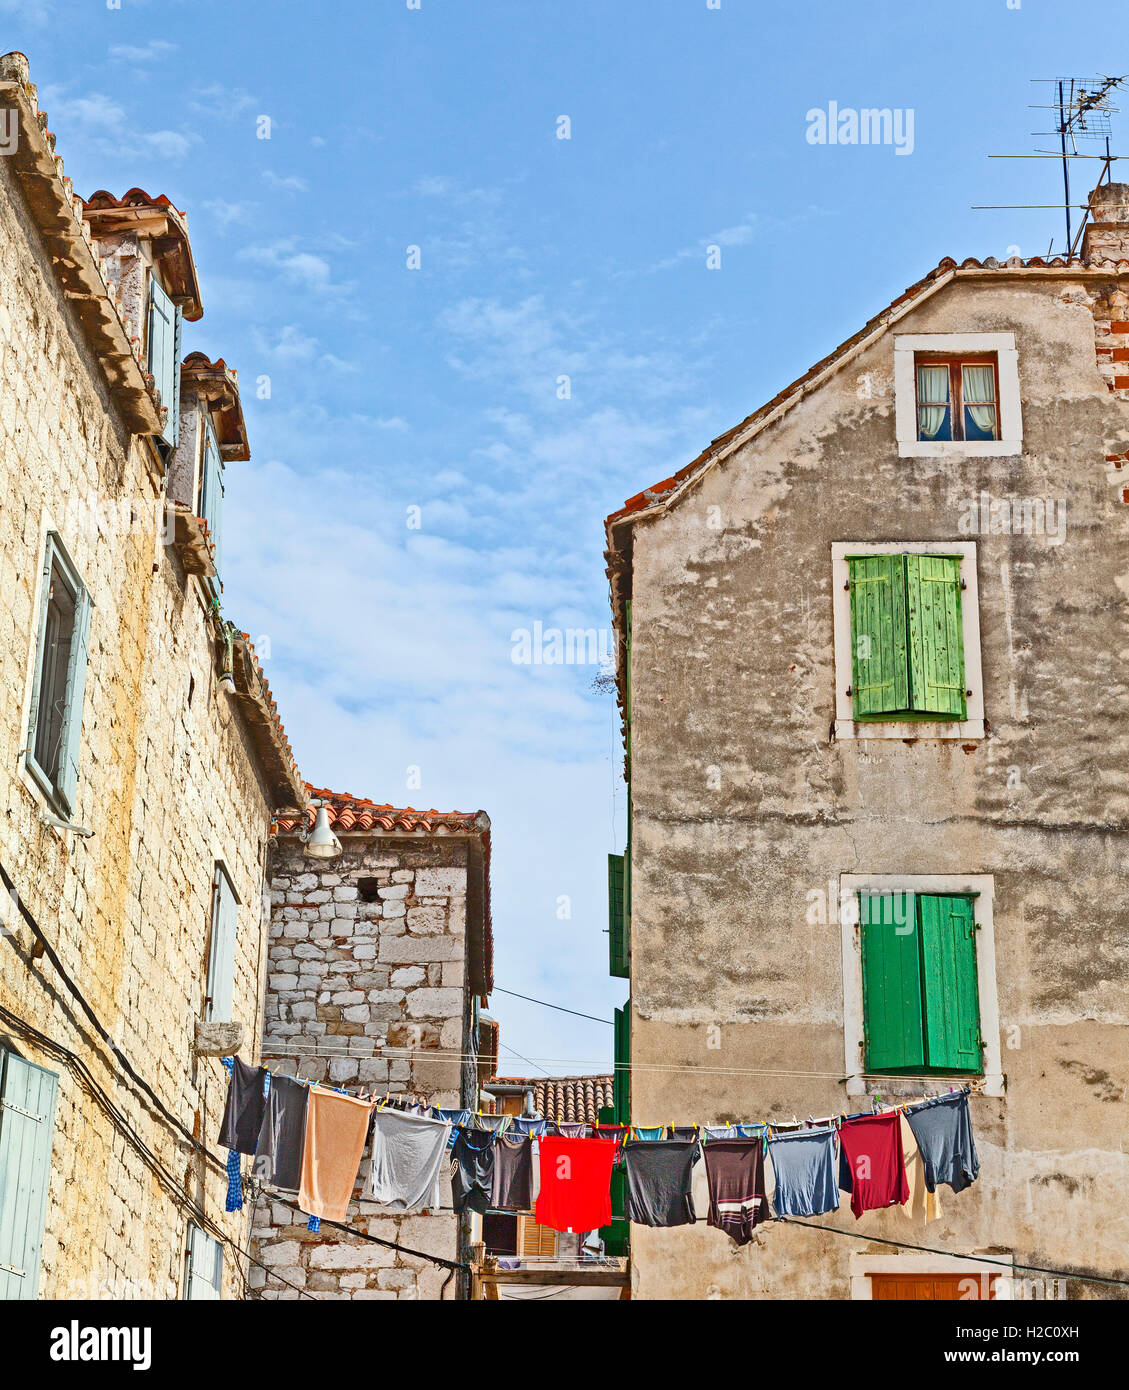 Split, Kroatien, alte Bürgerhäuser, Fensterläden, waschen hängen auf einer Linie. Blauer Himmel Stockfoto